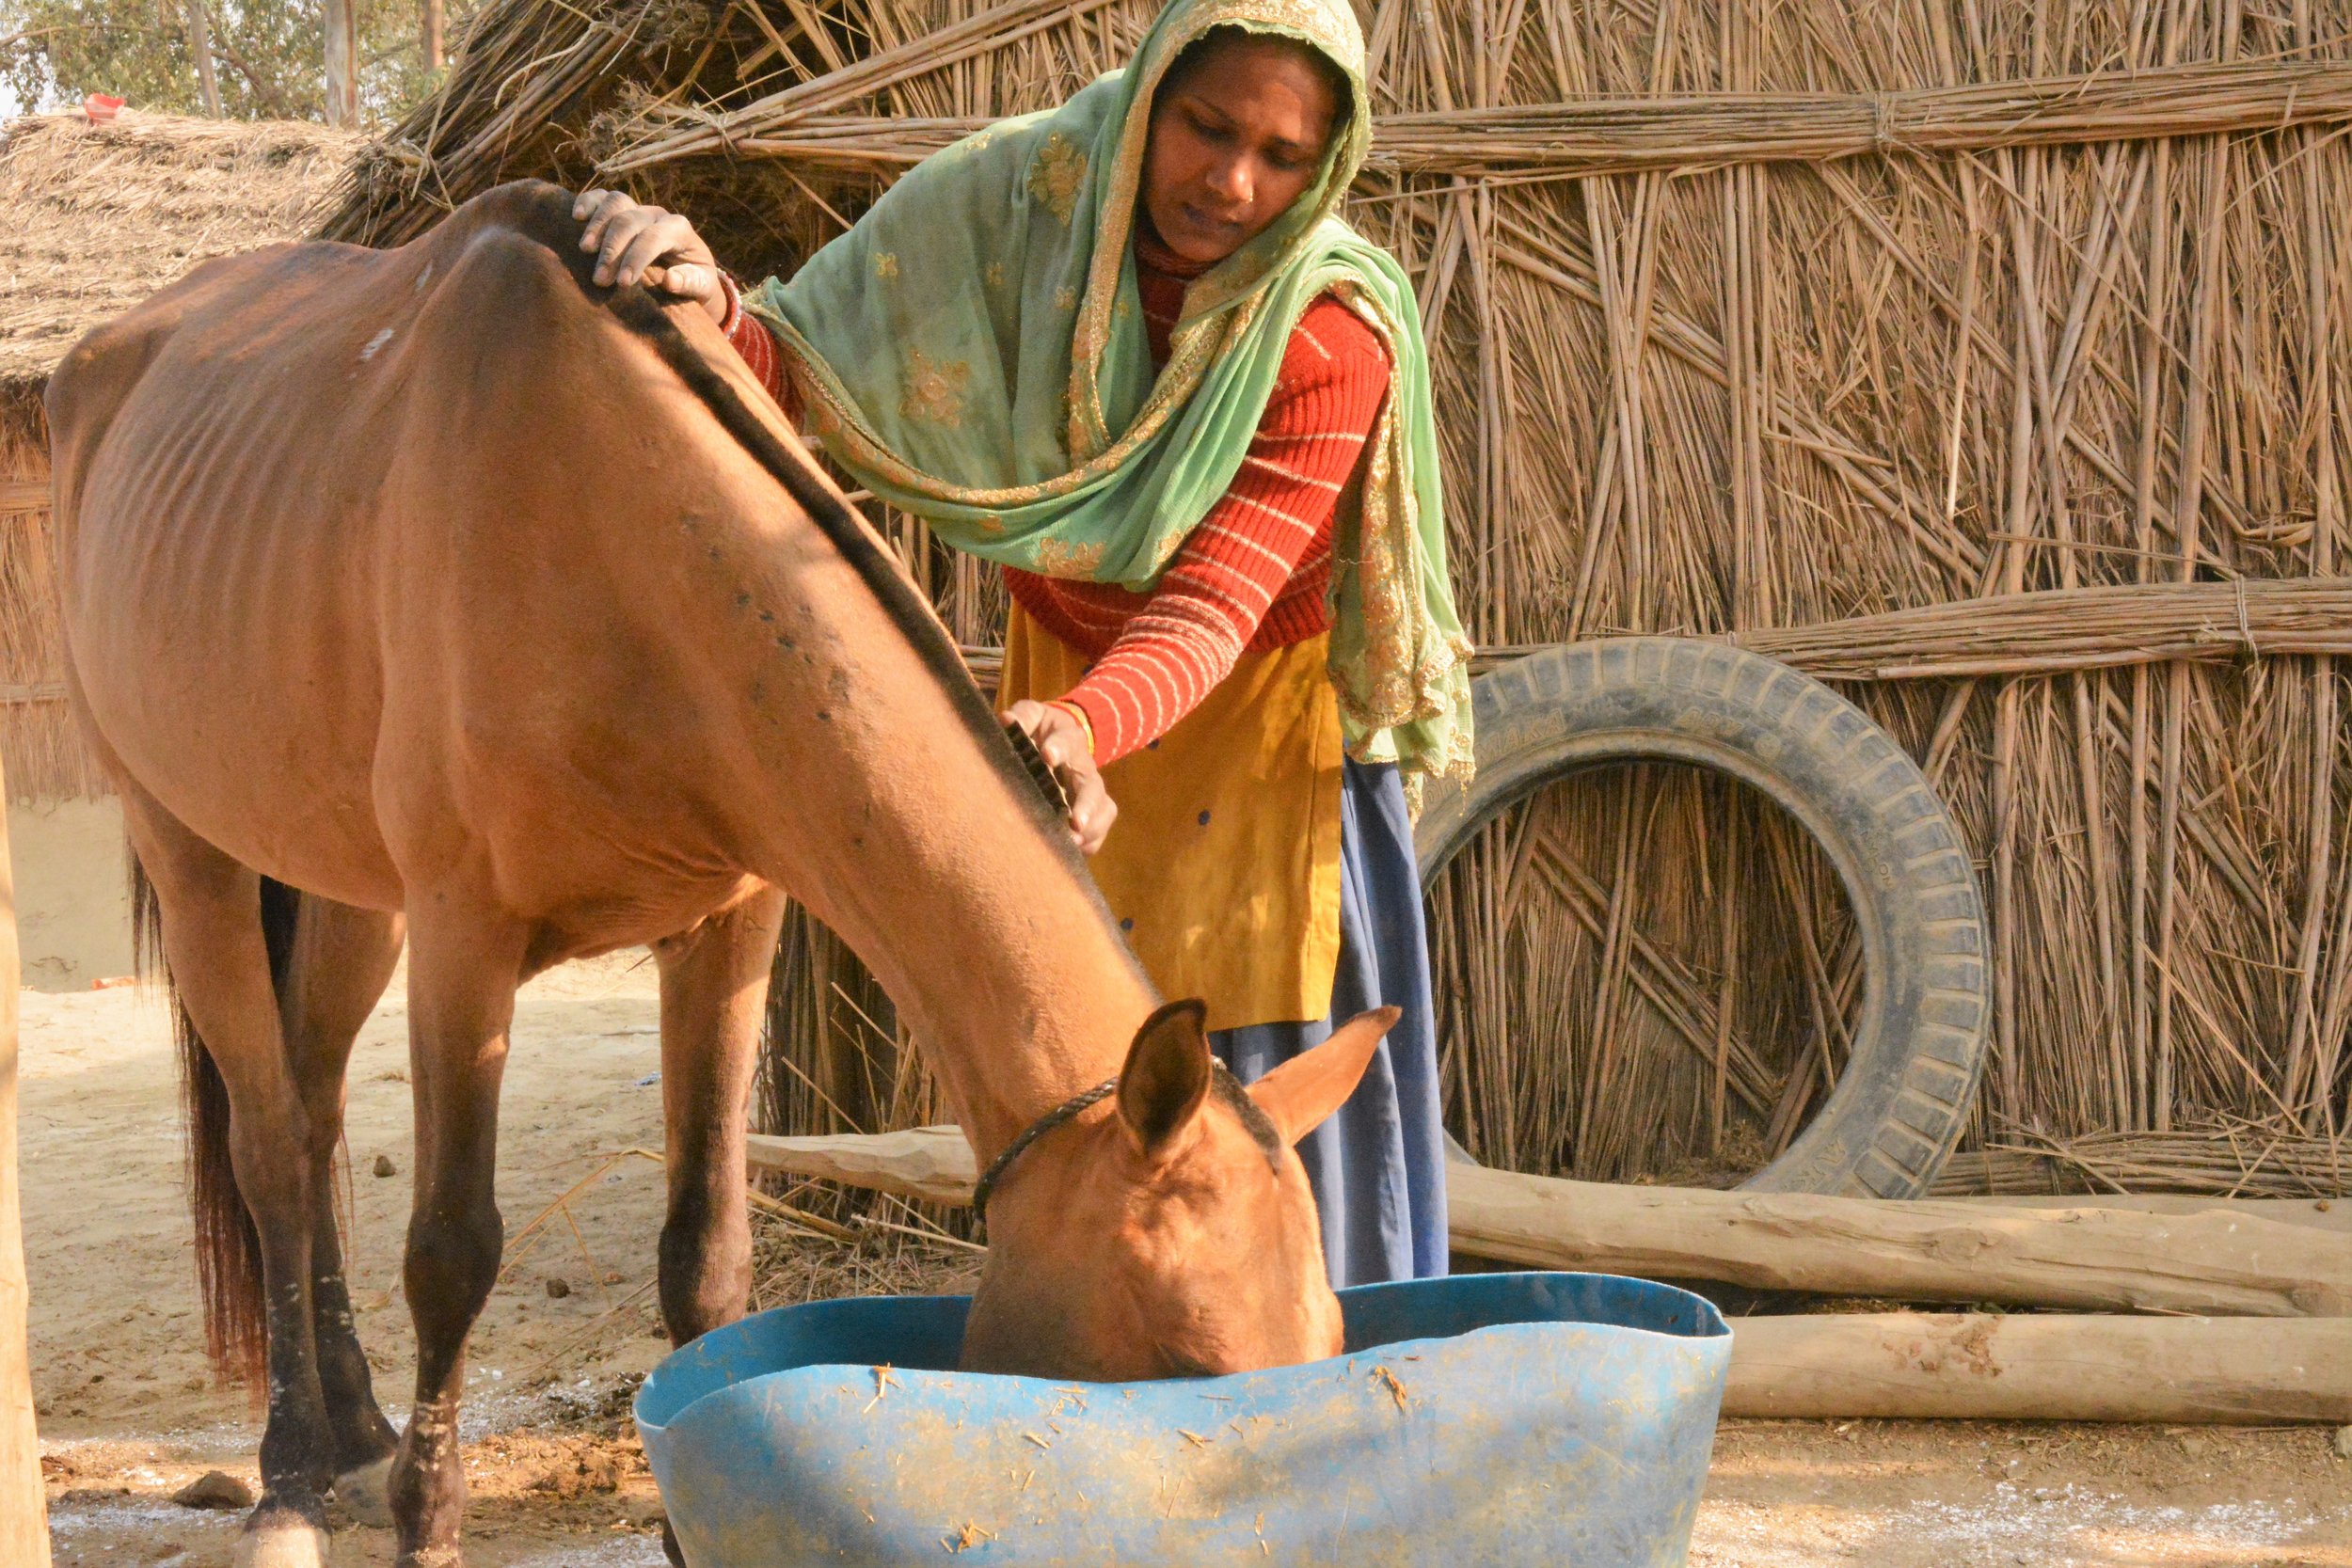 women owner grooming the equine.jpg